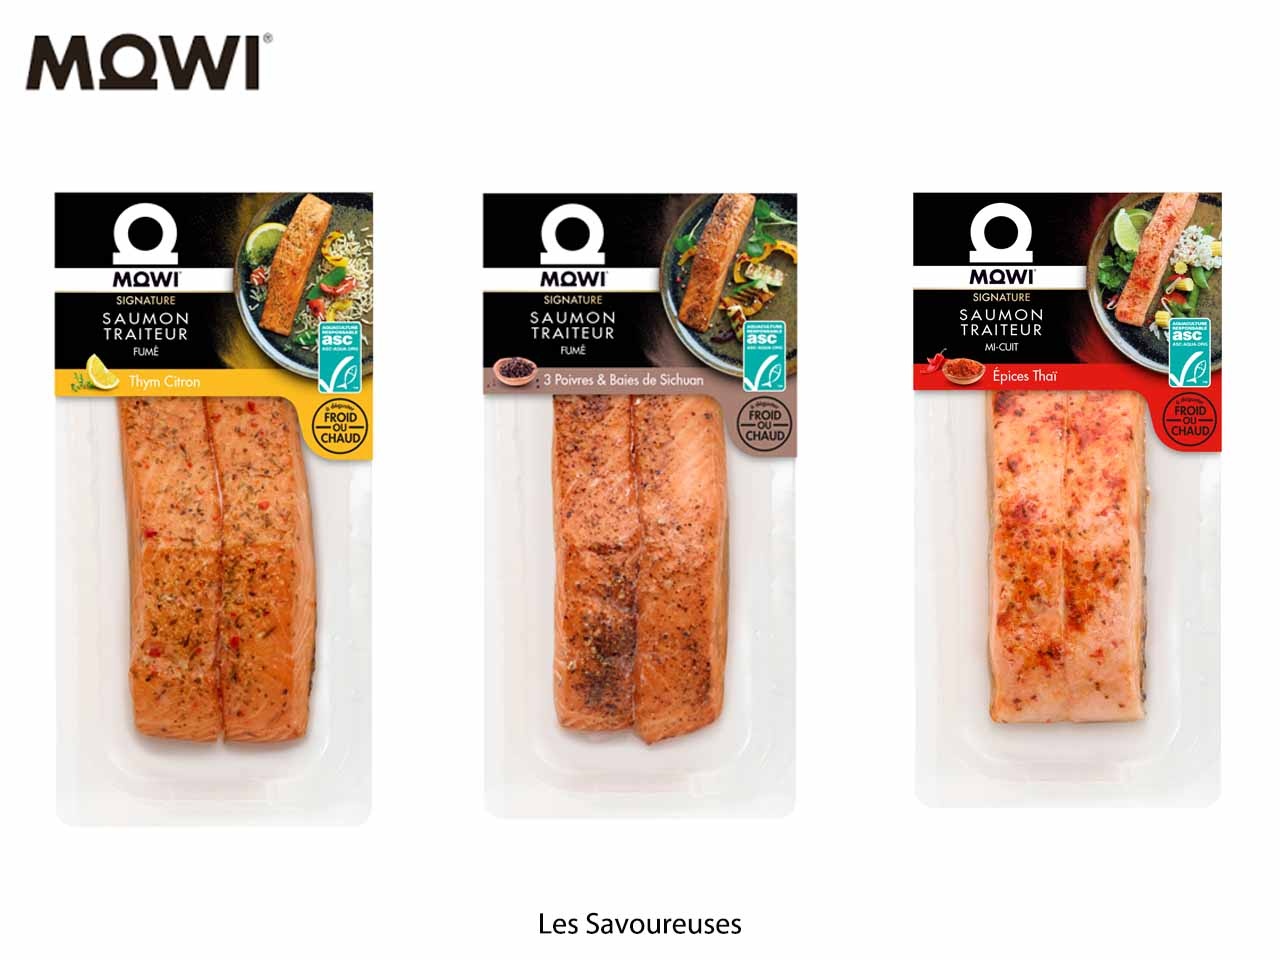 Mowi casse les codes, avec sa nouvelle gamme de saumon traiteur